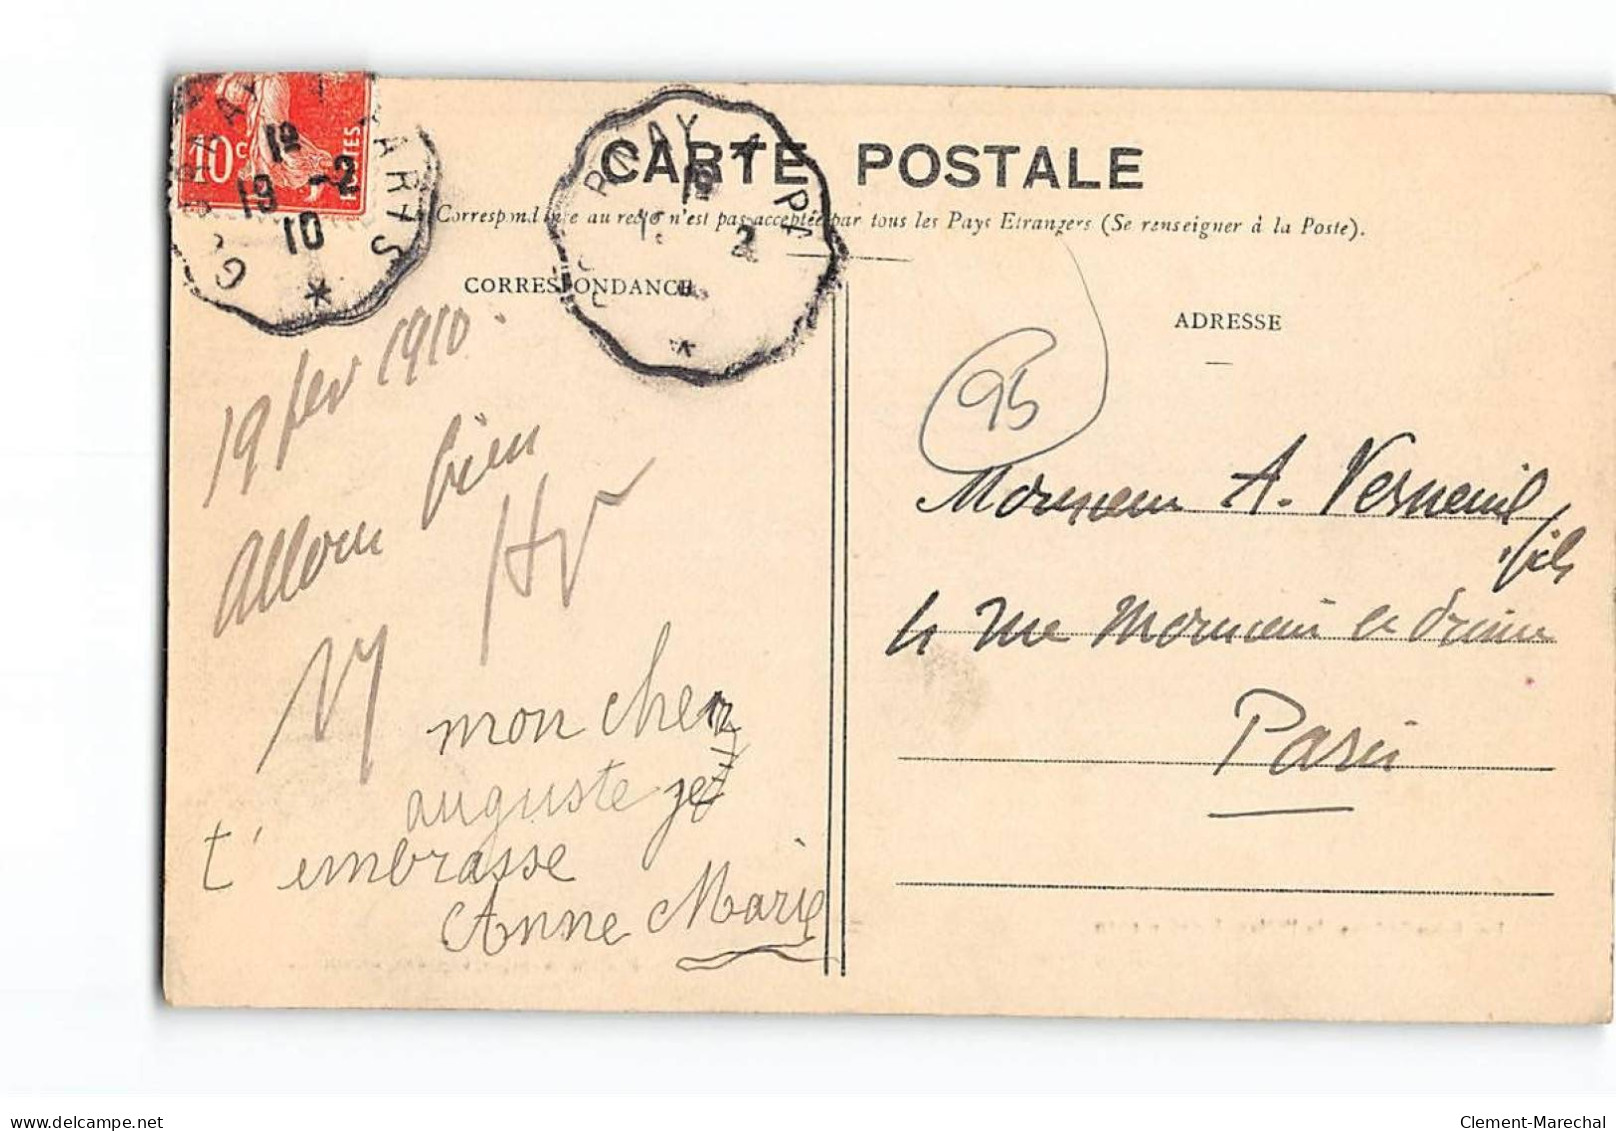 PONTOISE - Les Inondations De L'Oise - Janvier 1910 - L'Ile Du Pothuis - Le Pavillon Rose - état - Pontoise